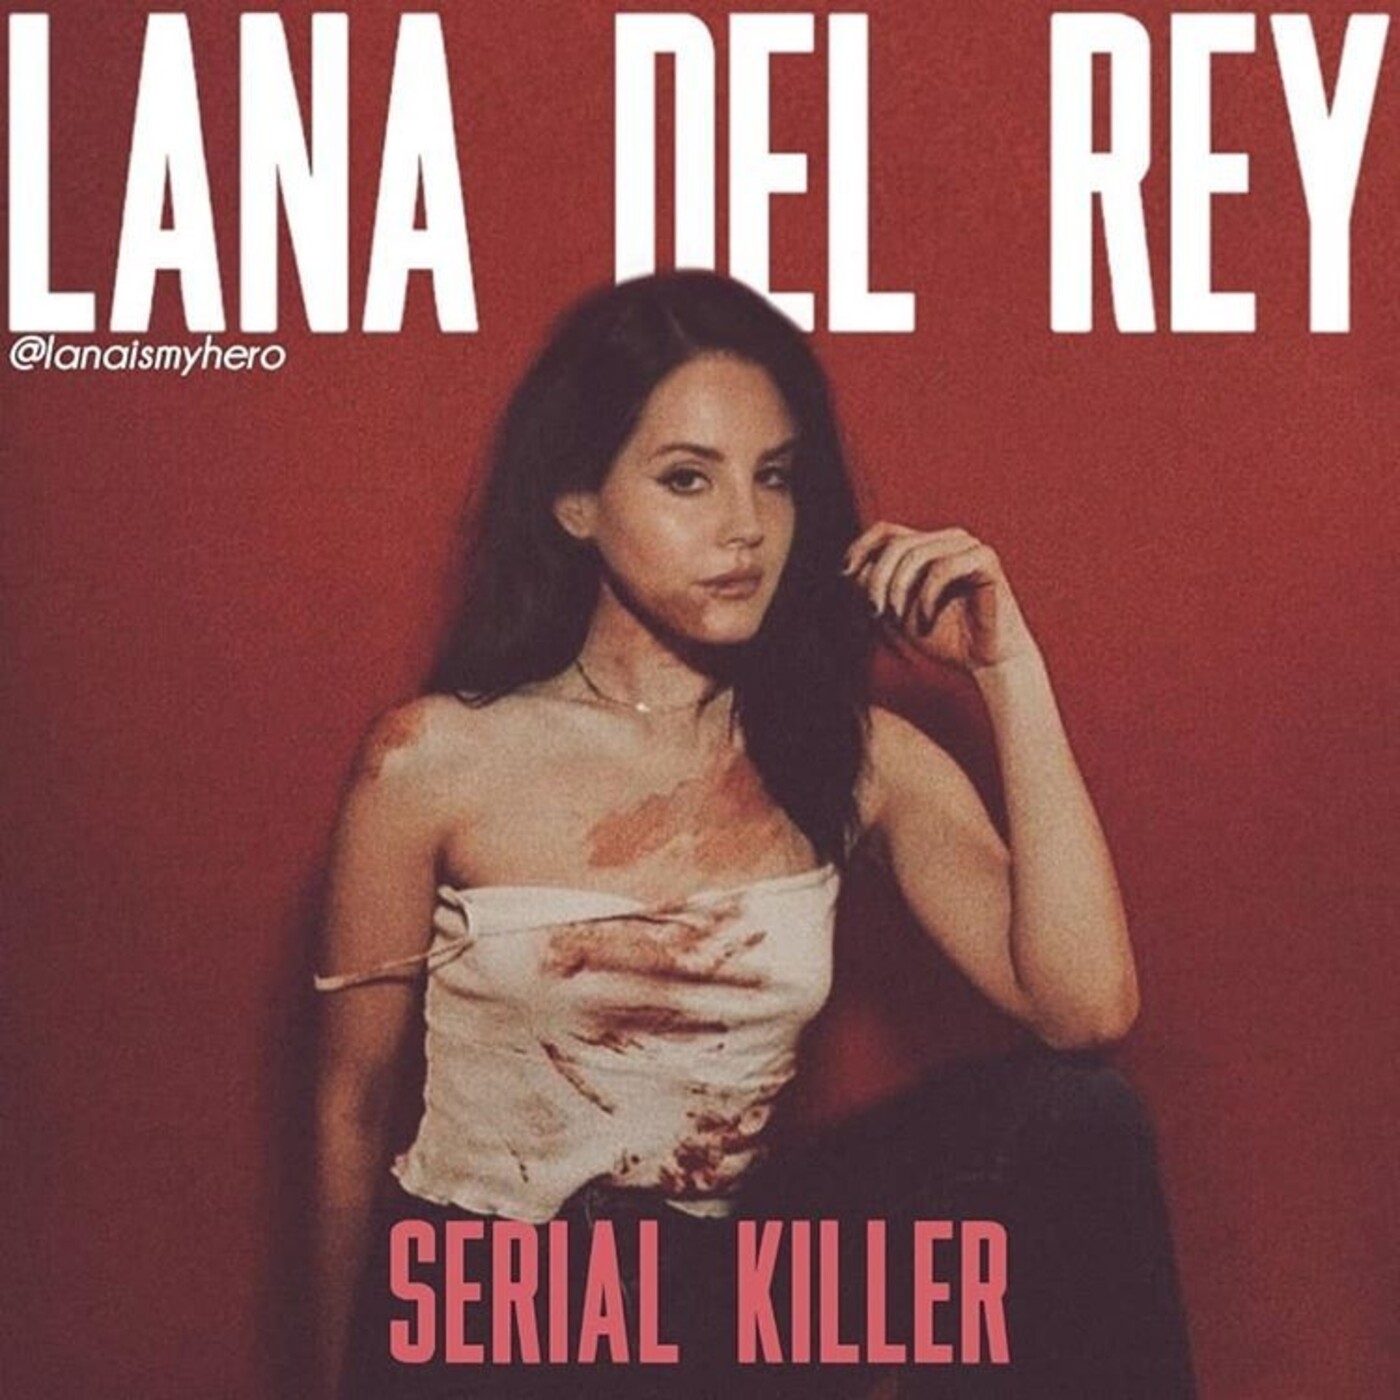 Lana Del Rey - Serial Killer en UNRELEASED SONGS en mp3(17/10 a las 01